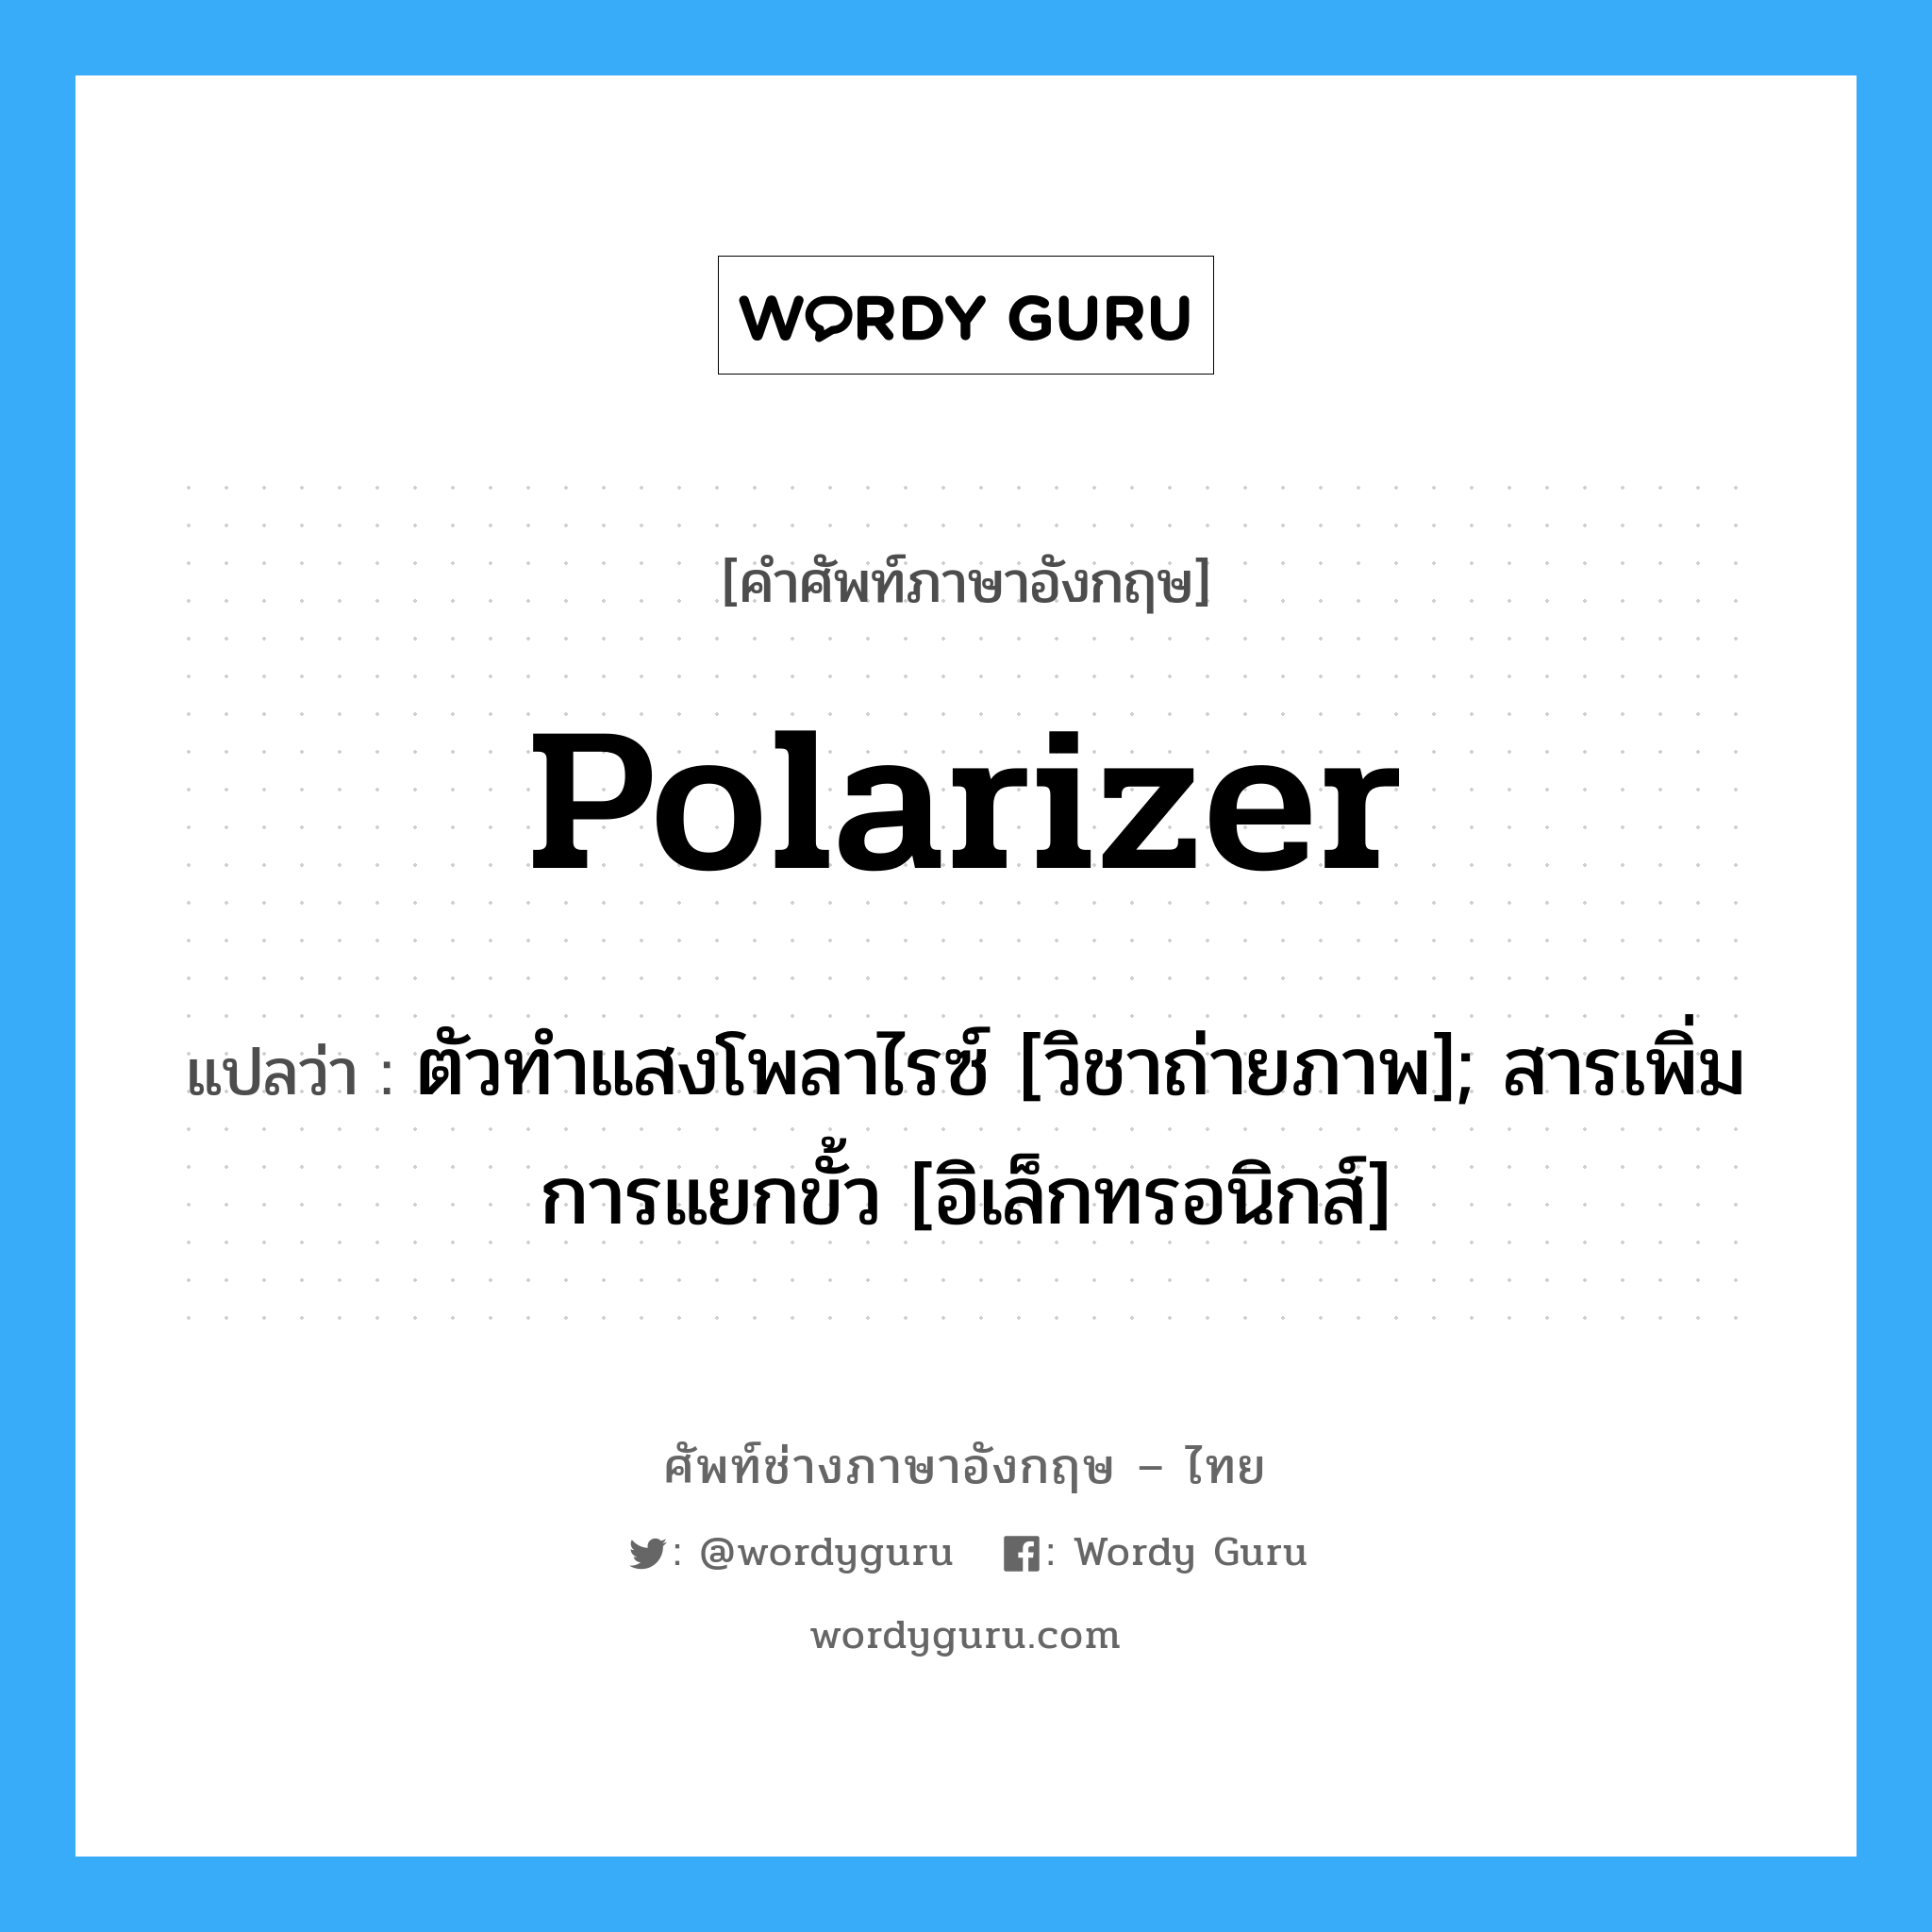 Polarizer แปลว่า?, คำศัพท์ช่างภาษาอังกฤษ - ไทย Polarizer คำศัพท์ภาษาอังกฤษ Polarizer แปลว่า ตัวทำแสงโพลาไรซ์ [วิชาถ่ายภาพ]; สารเพิ่มการแยกขั้ว [อิเล็กทรอนิกส์]